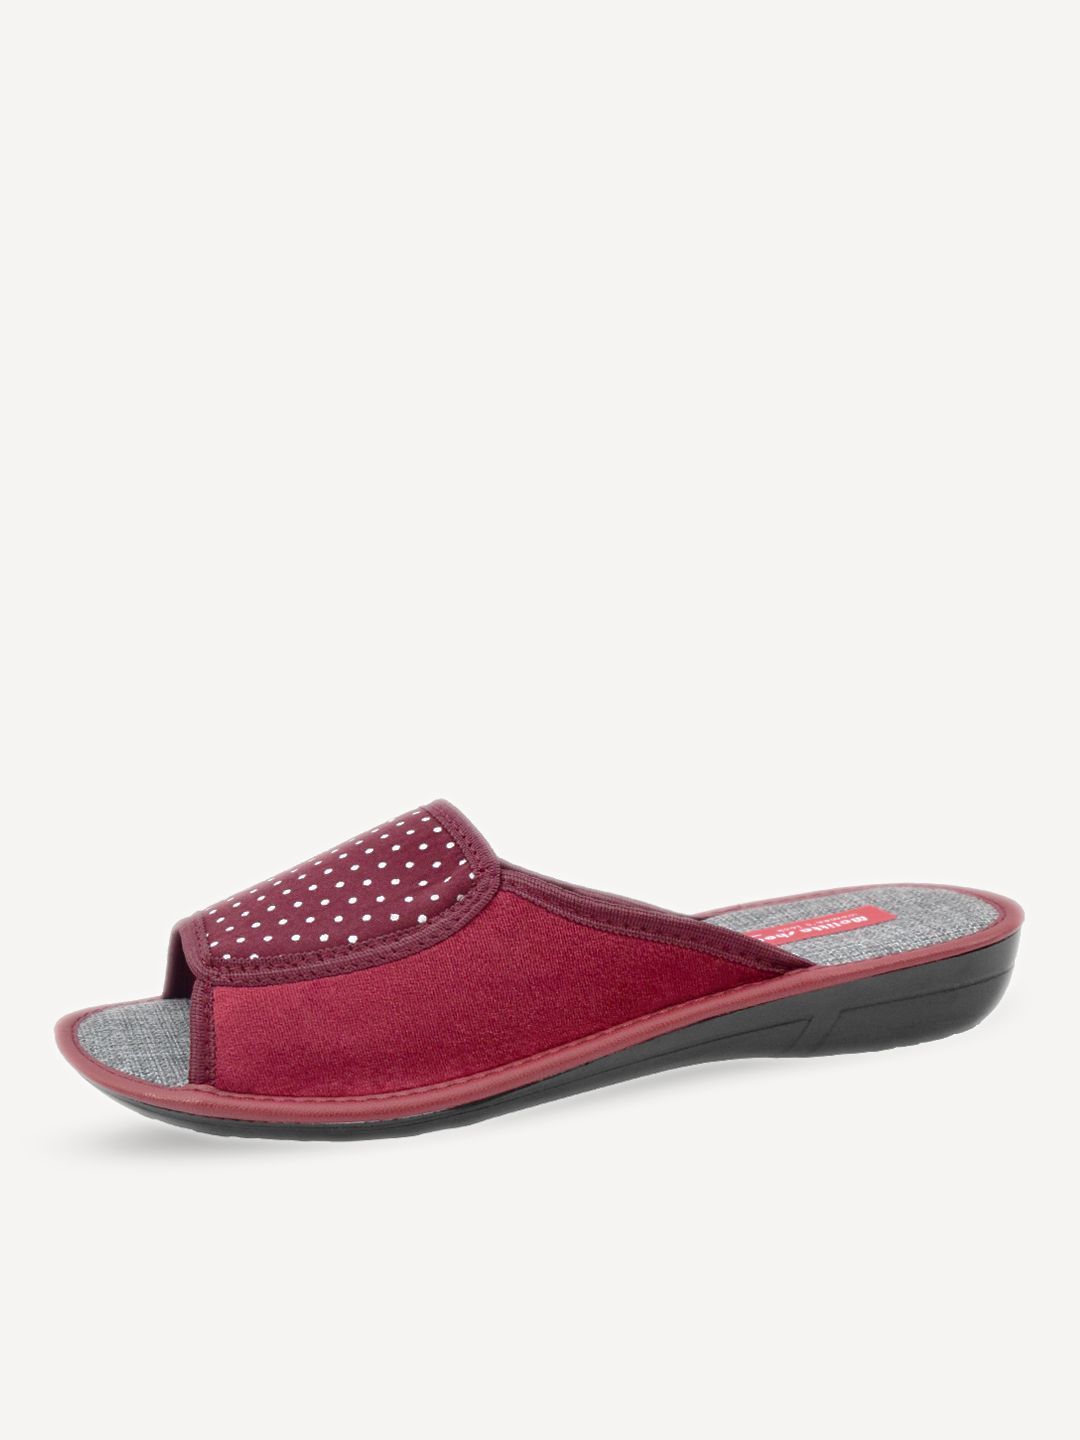 Тапочки женские Melitta Shoes W-265/3 бордовые 40 RU